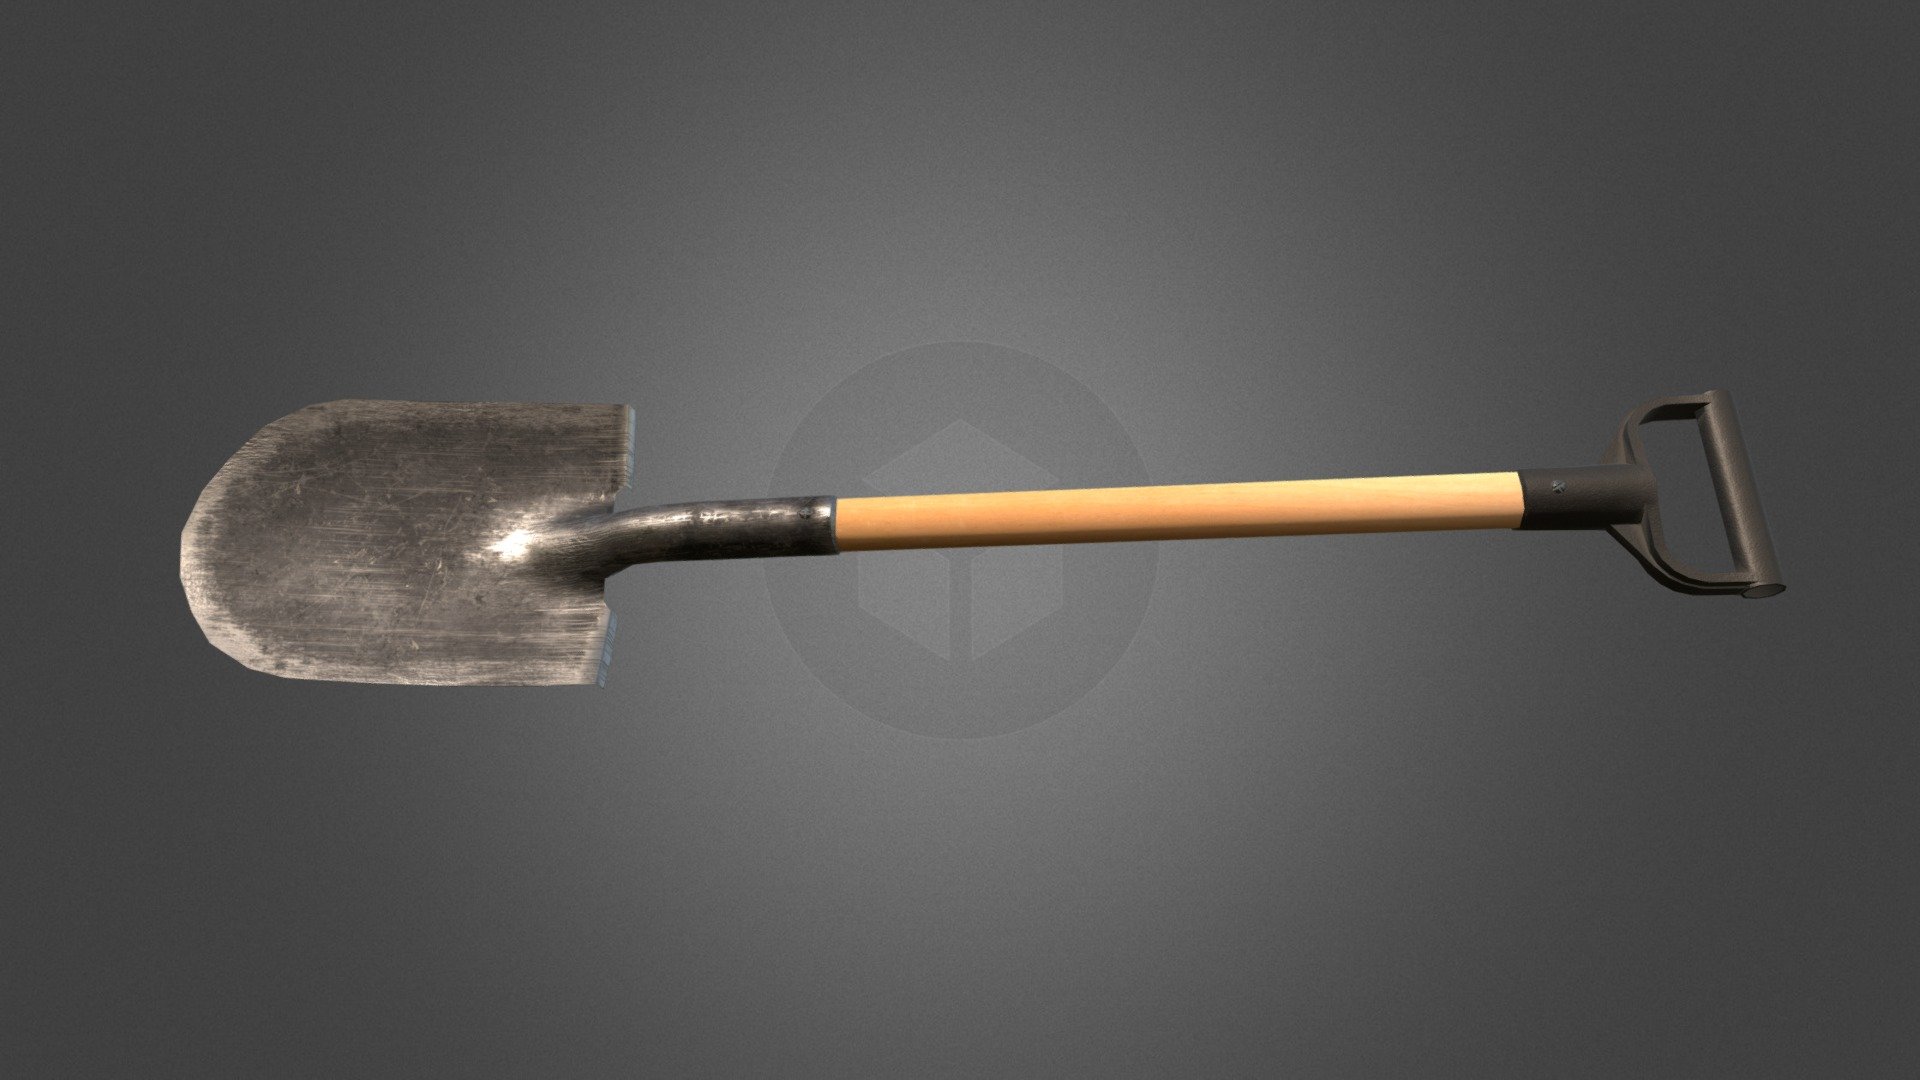 Shovel - Shovel - 3D model by STmodels (@gravchik) 3d model